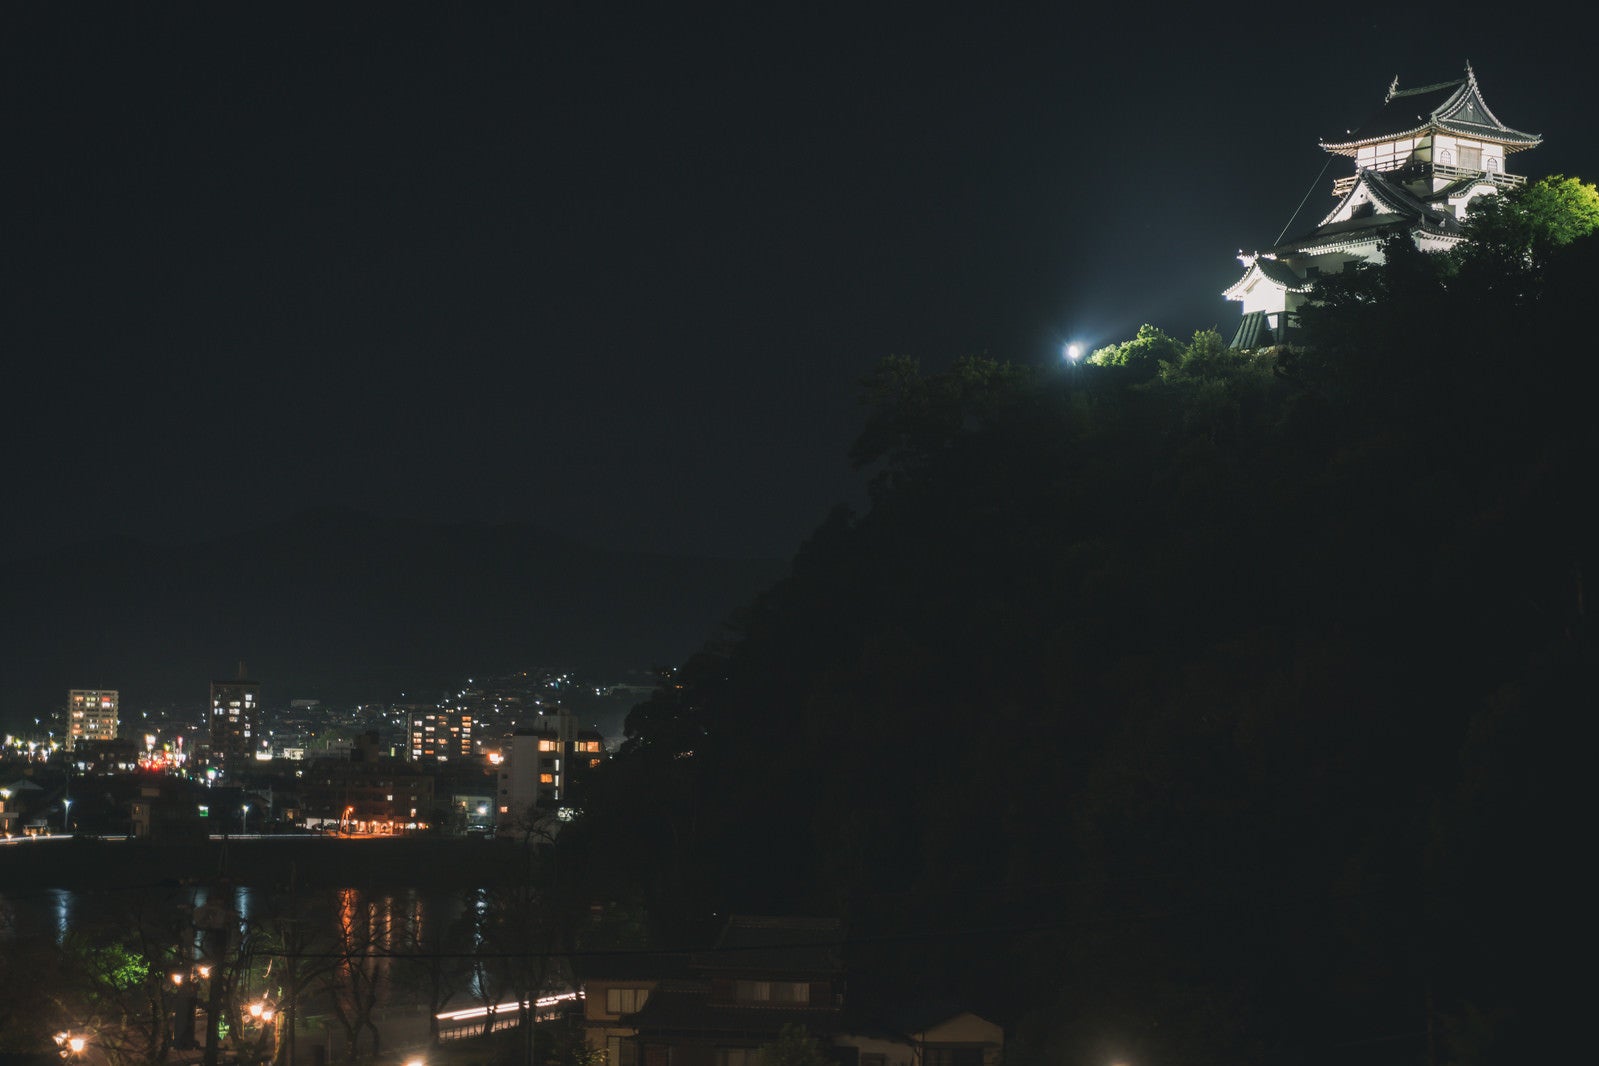 「ライトアップされた犬山城と灯りを受けて輝く木曽川の向うに見える各務原市の街灯り」の写真